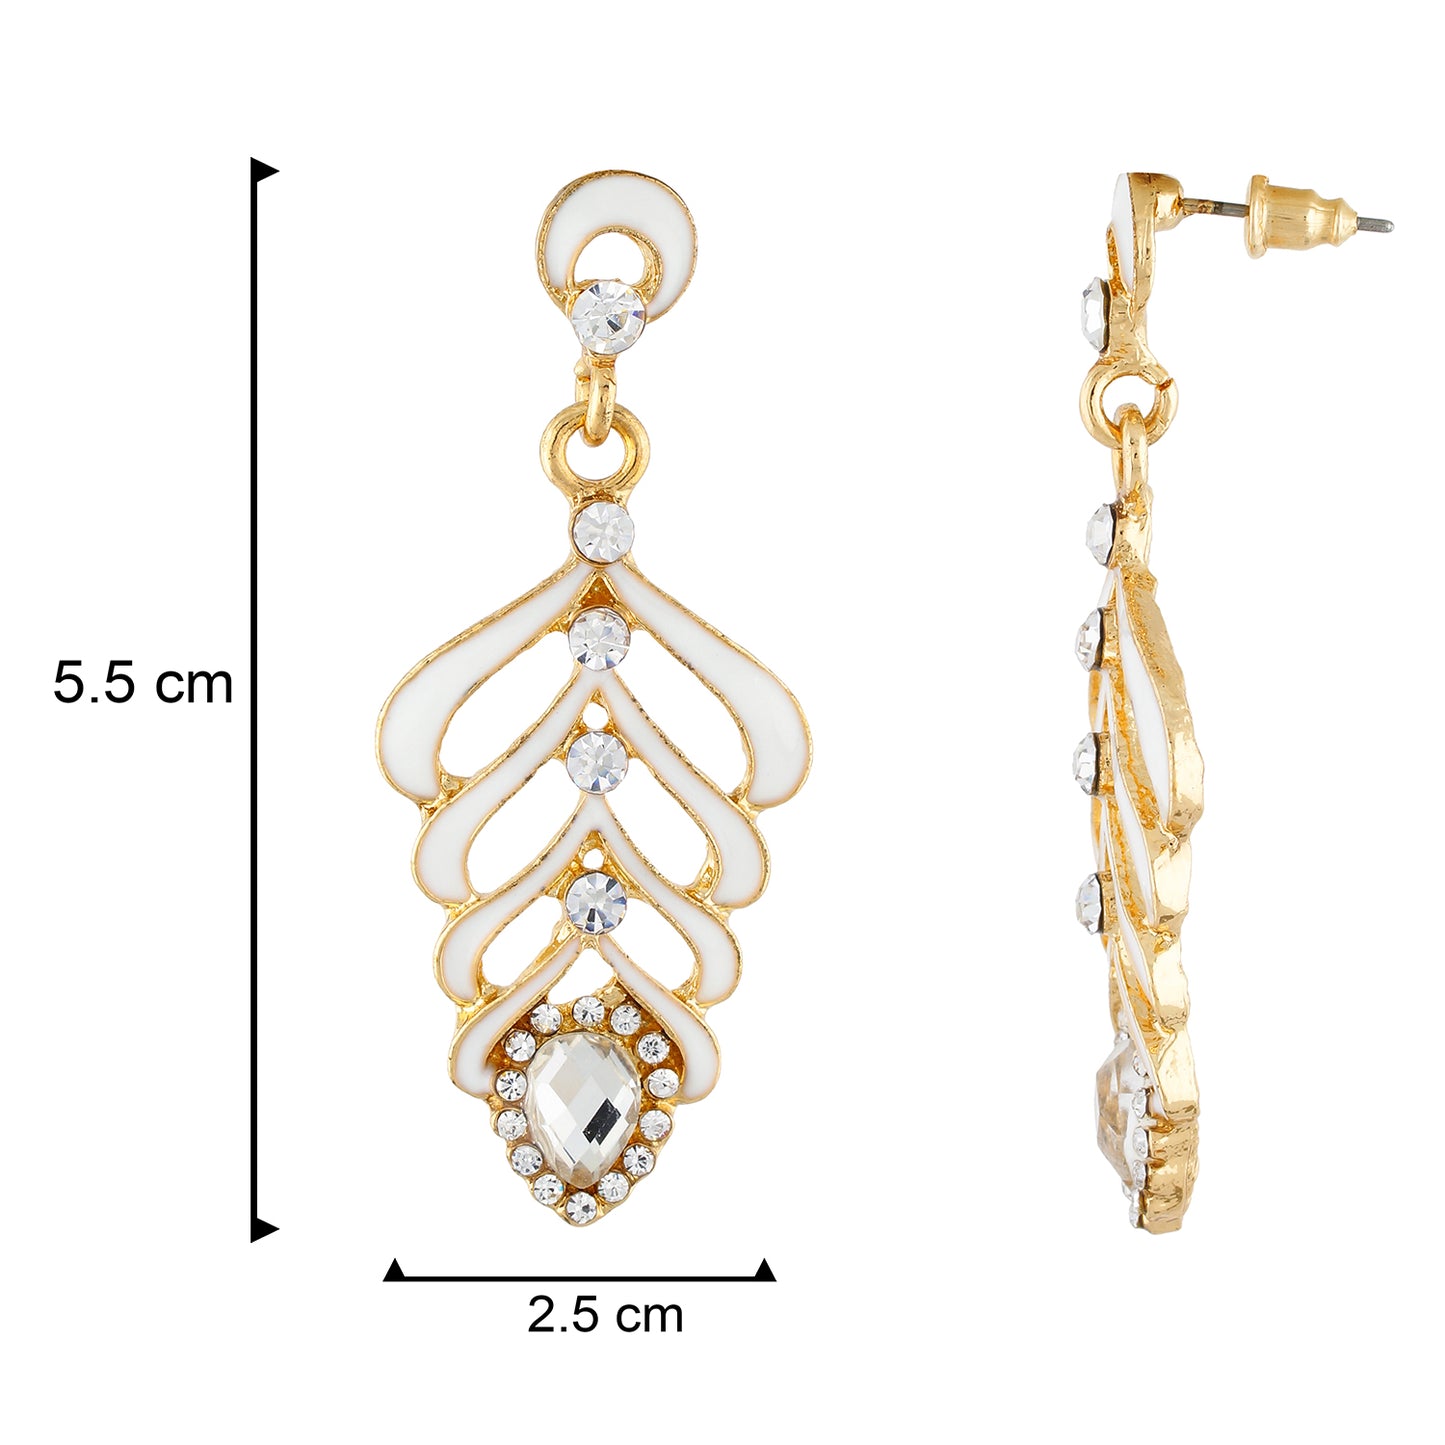 Elegant White and Gold Colour Leaf Design Enamel Enhanced Earring for Girls and Women